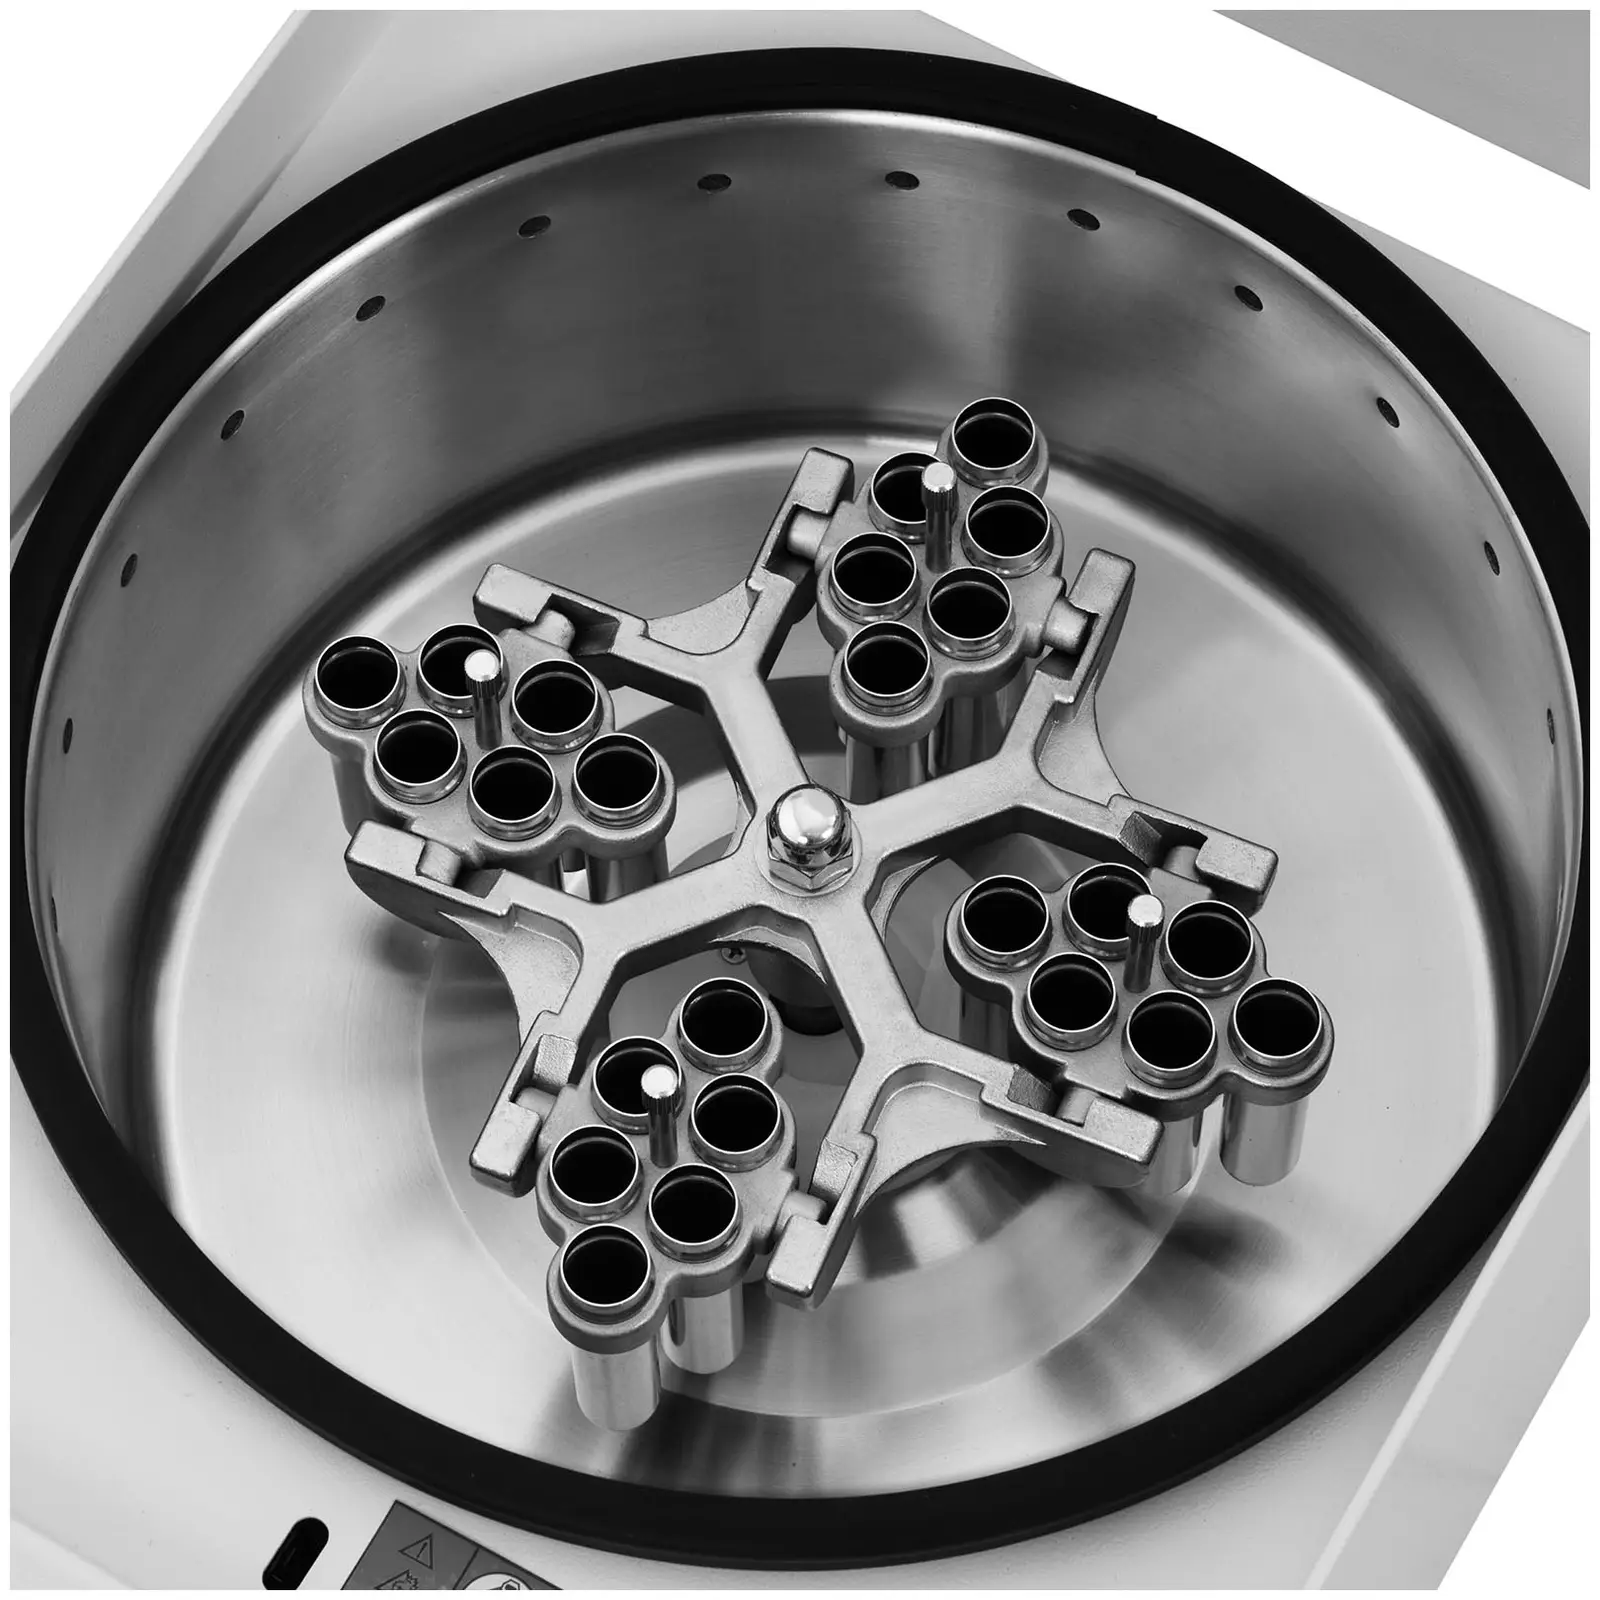 Stolová centrifúga - súprava - 24 x 10 ml - RZB 4 730 xg s výkyvným rotorom 4 x 50 ml